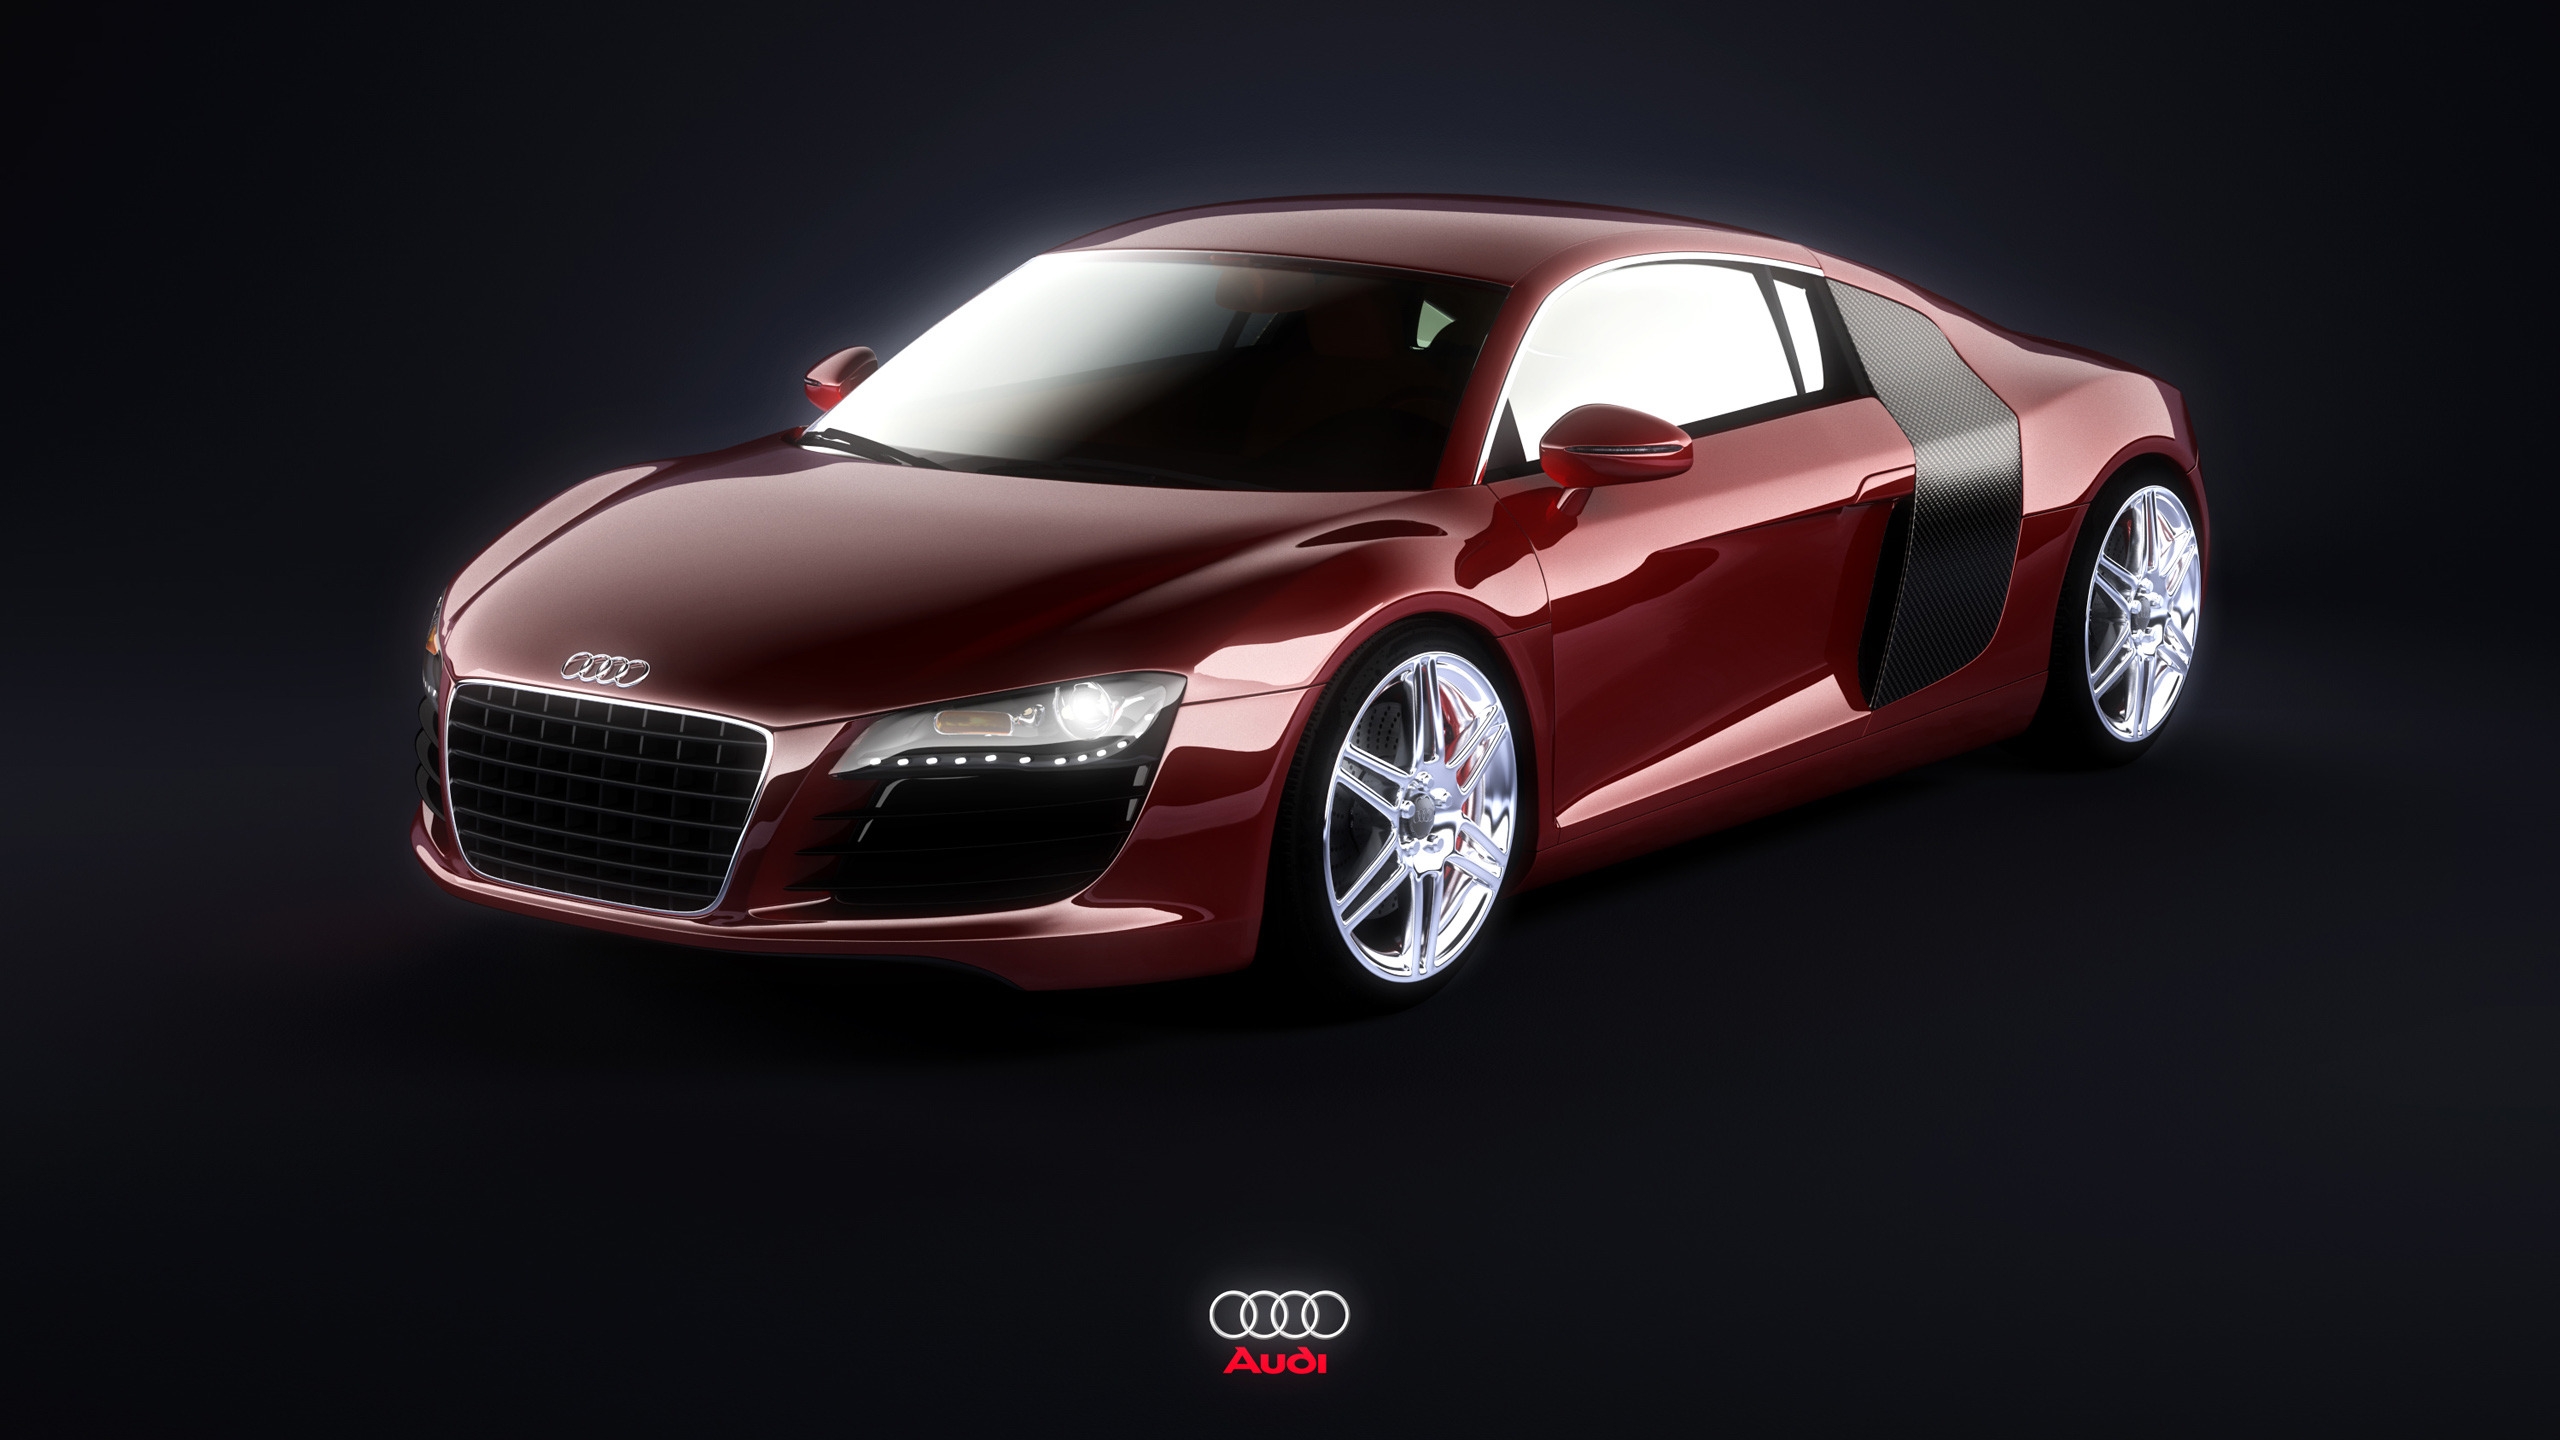 Audi R8 Burgundy for 2560x1440 HDTV resolution